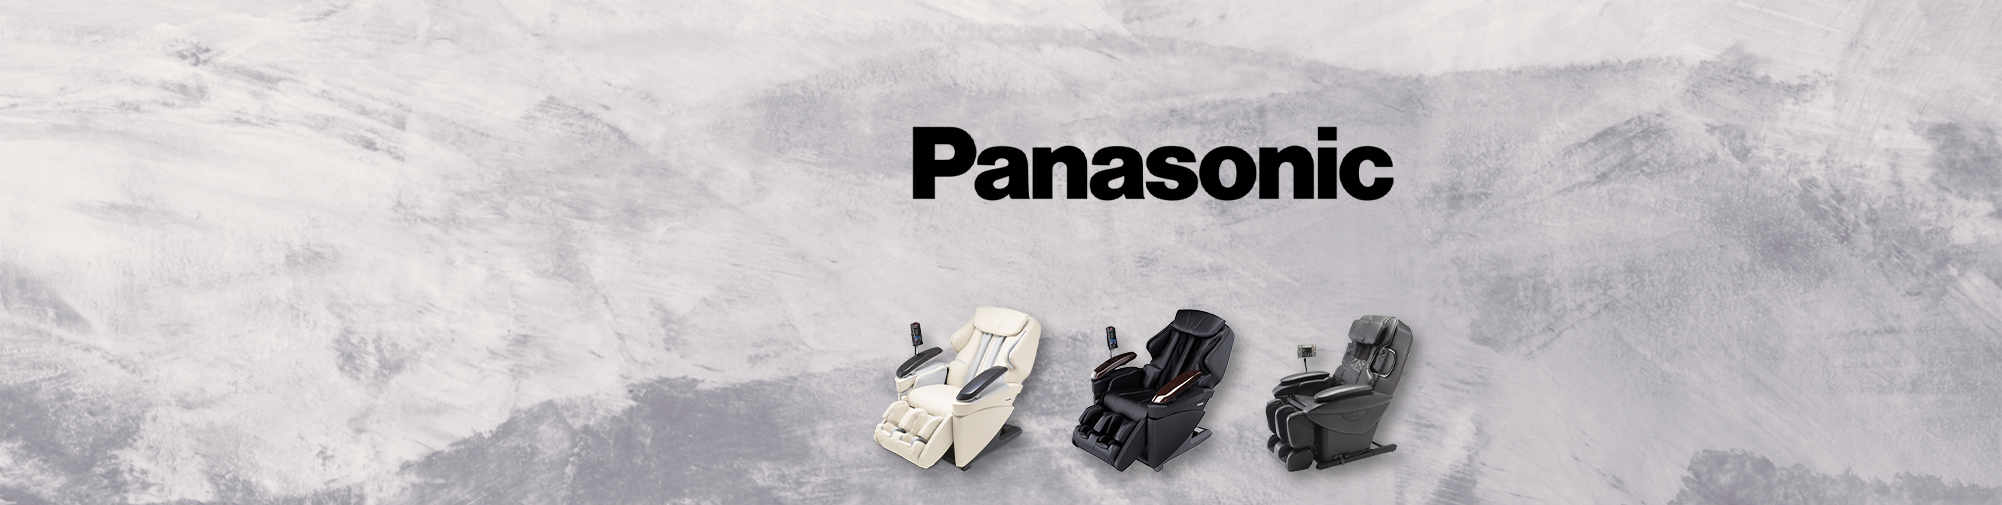 Ghế massage Panasonic Thế giới ghế massage